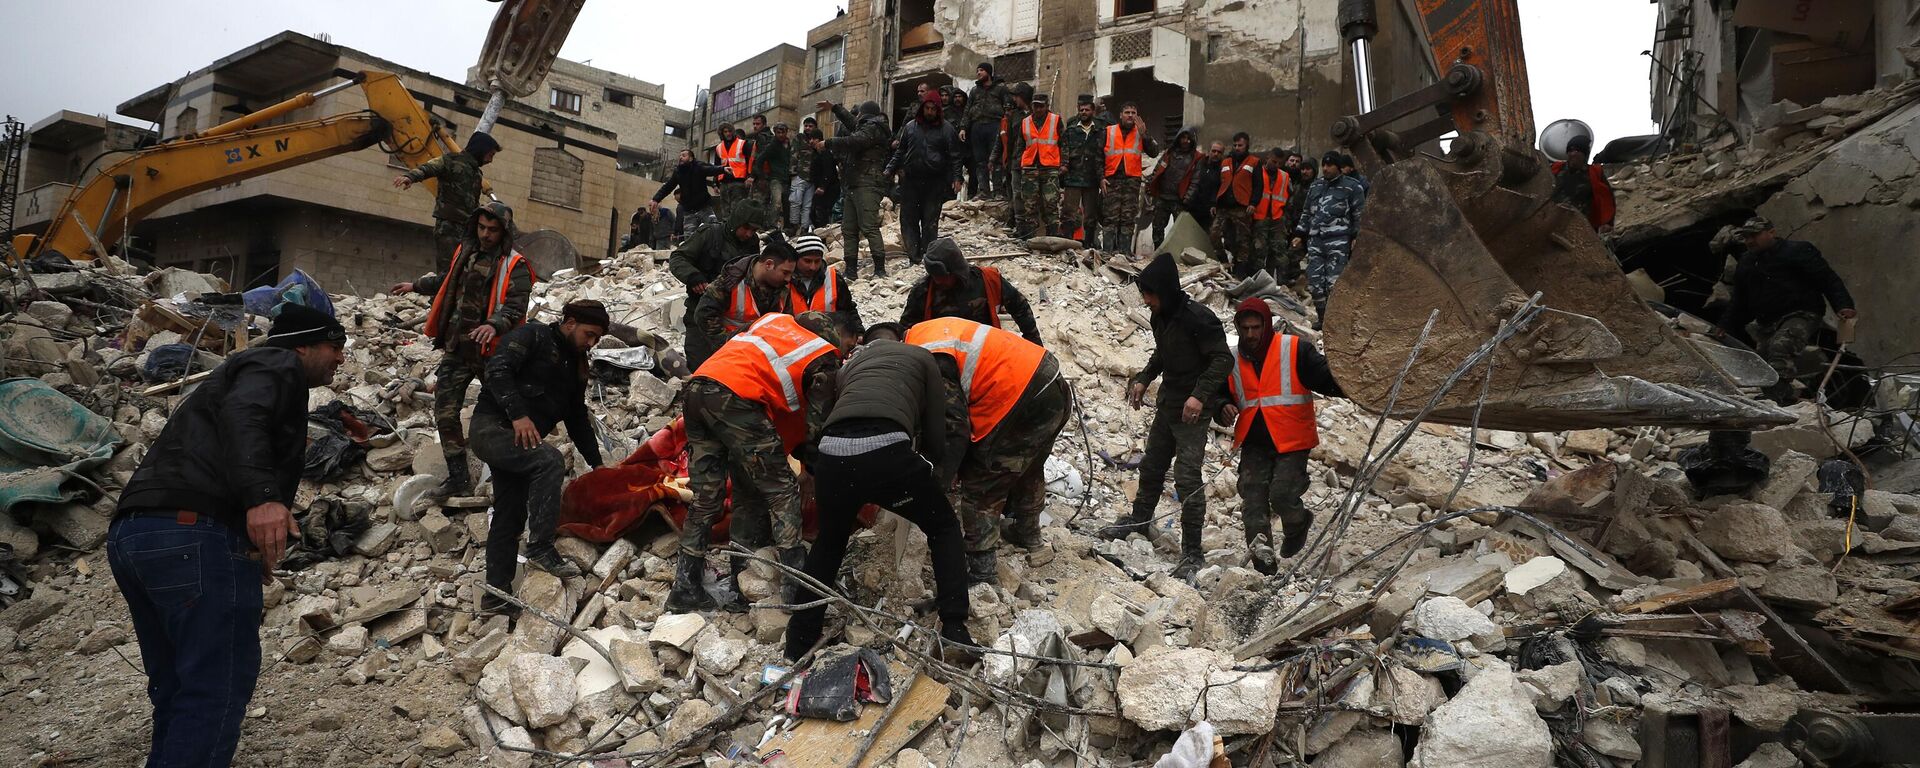 Последствия землетрясения в сирийской Хаме, 6 февраля 2023 года - Sputnik Латвия, 1920, 07.02.2023